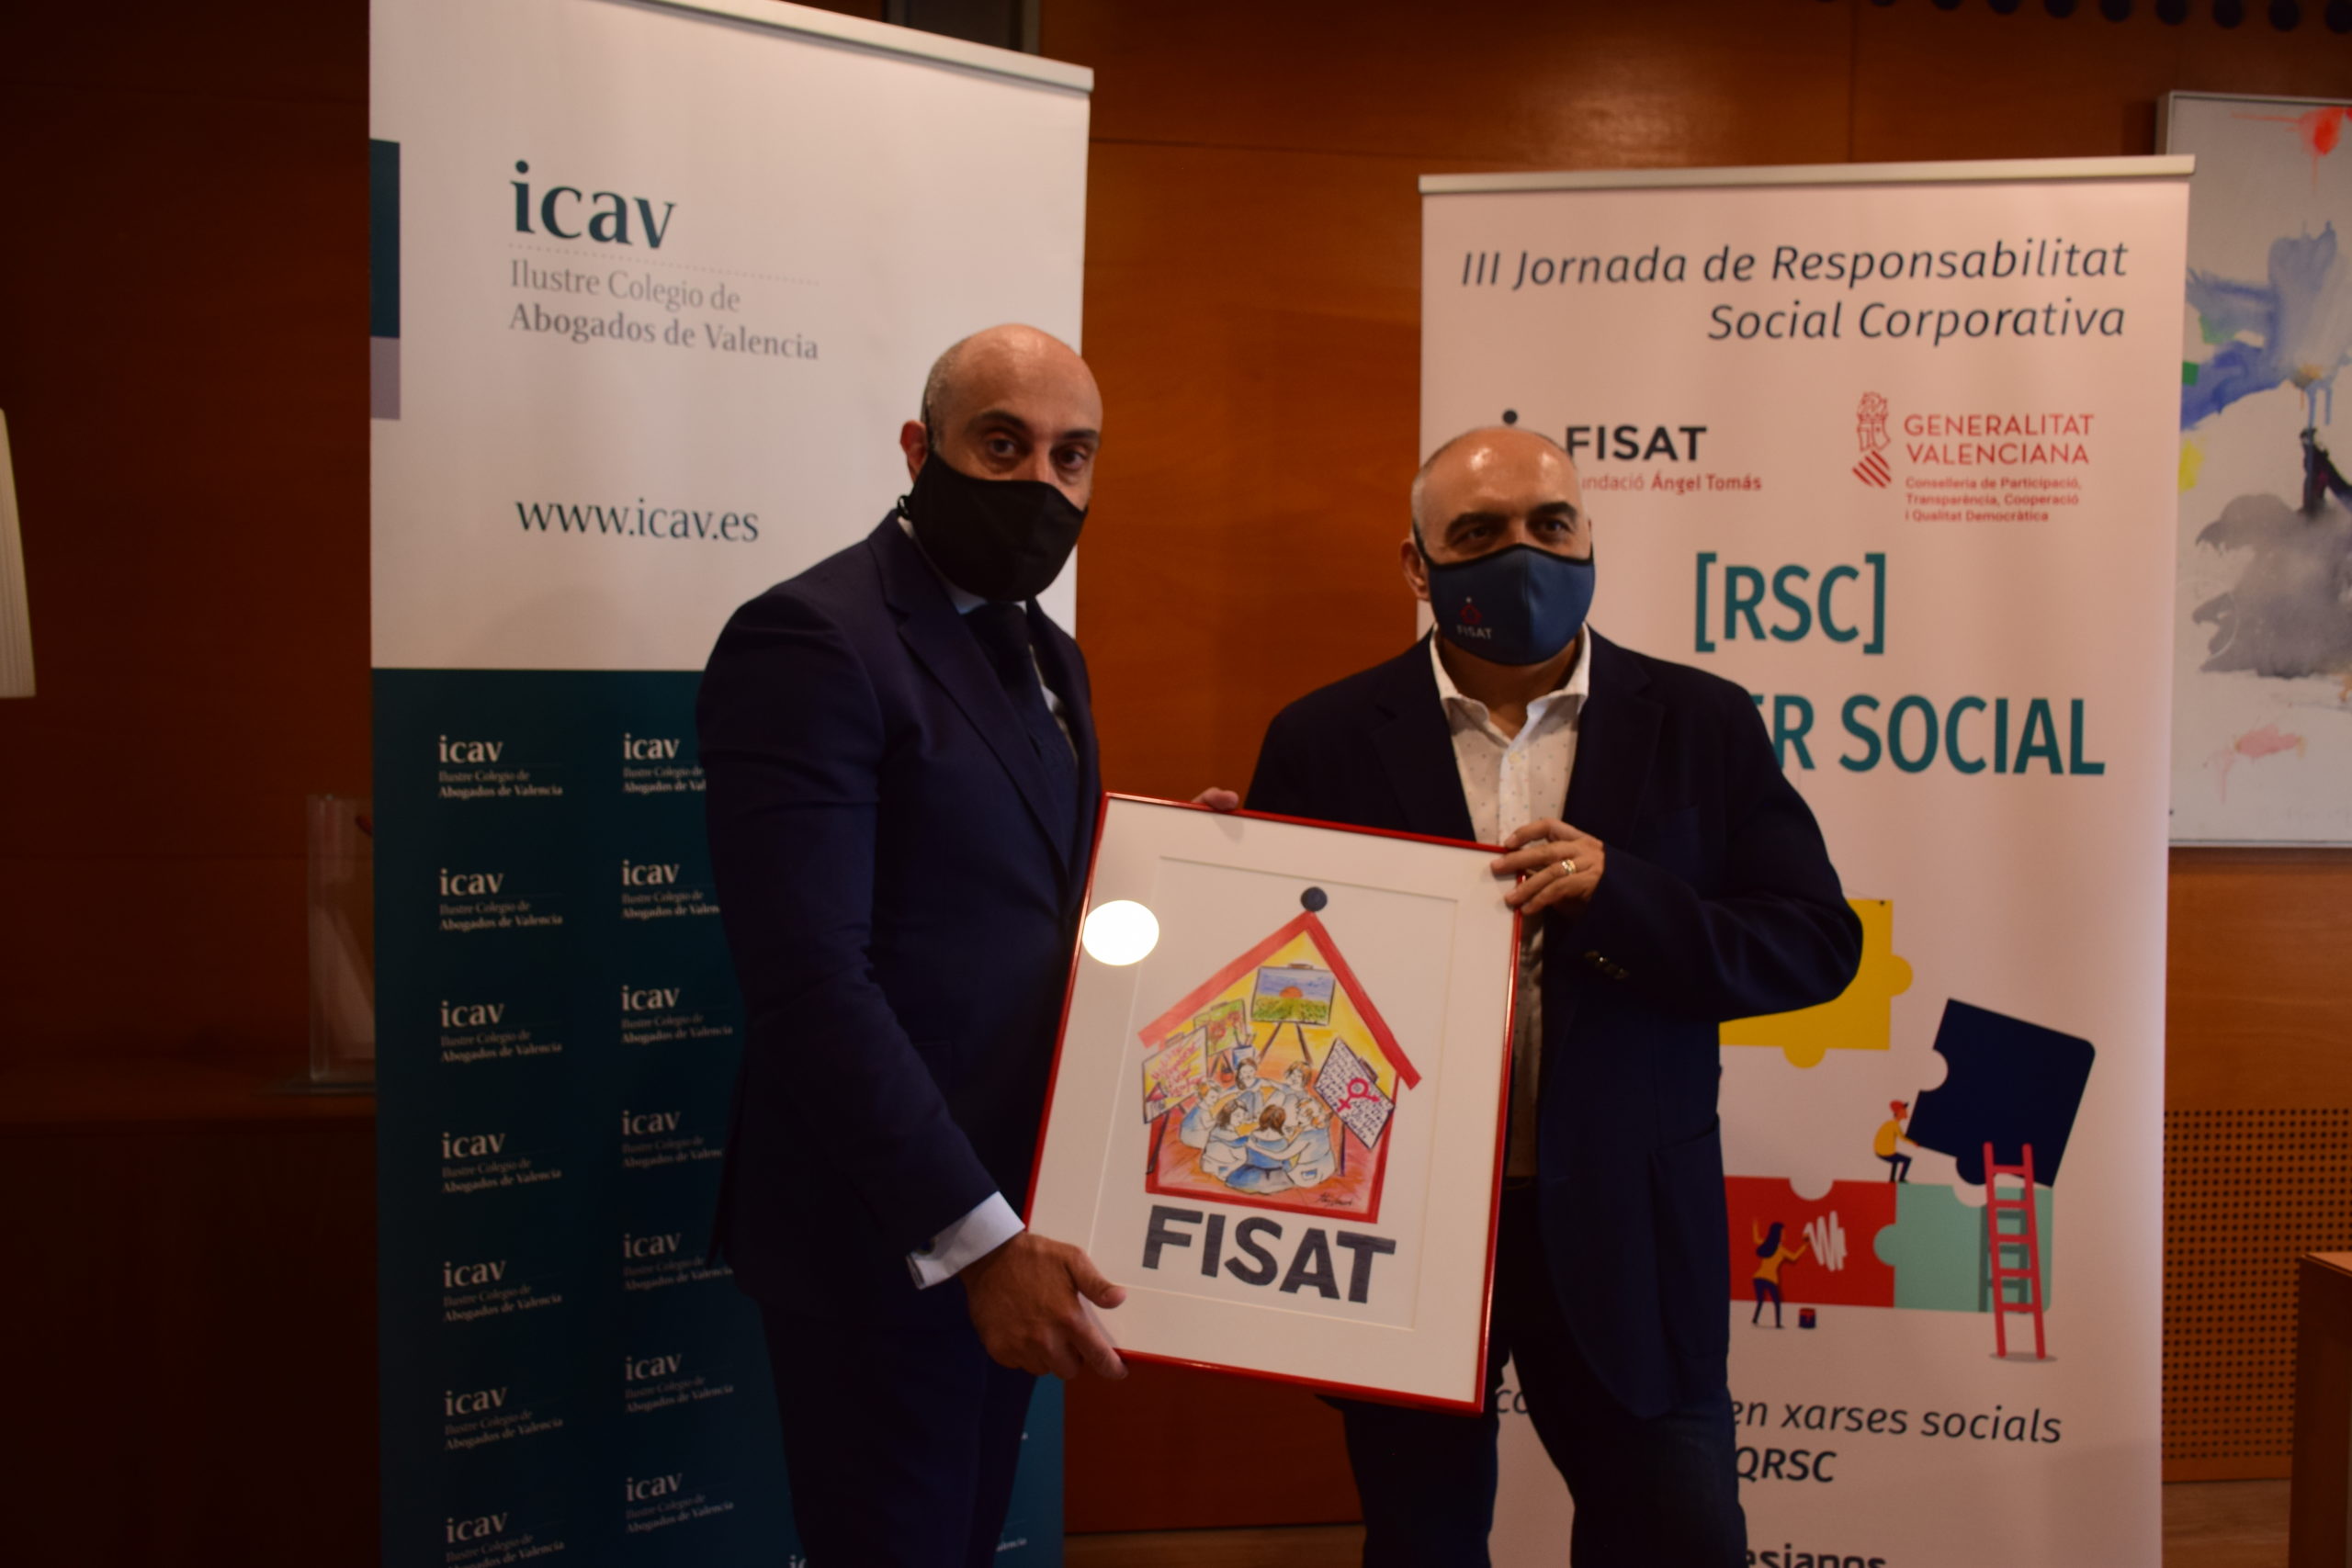 El Ilustre Colegio de Abogados de Valencia, premio “Quiero Ser Social” de FISAT